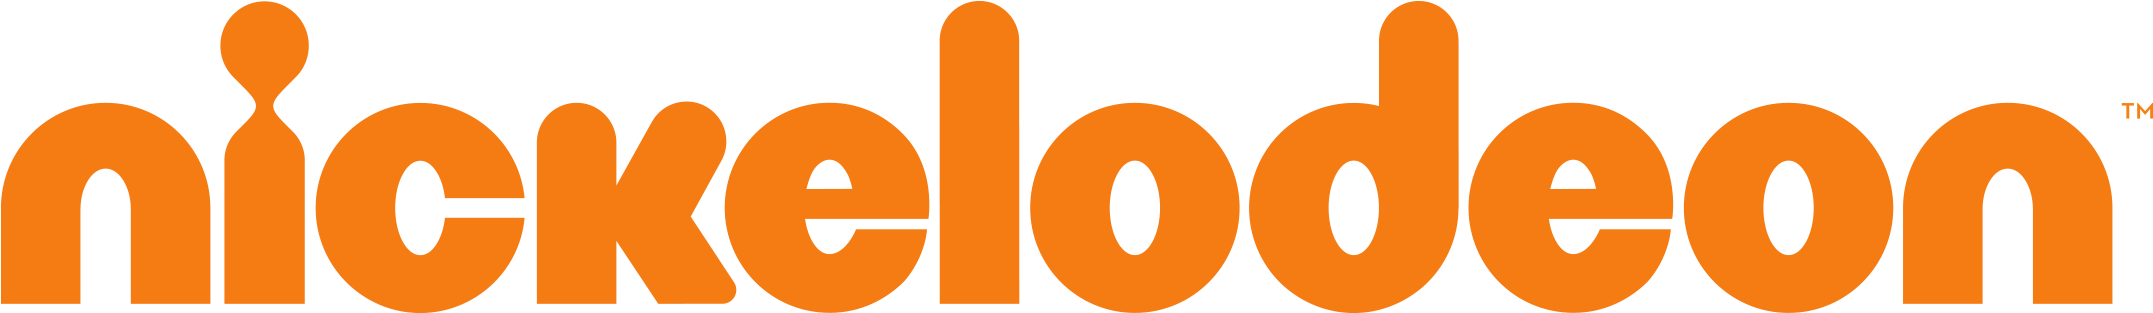 Nick Logo 2009 To Present - Nickelodeon Logo Png (2260x328)